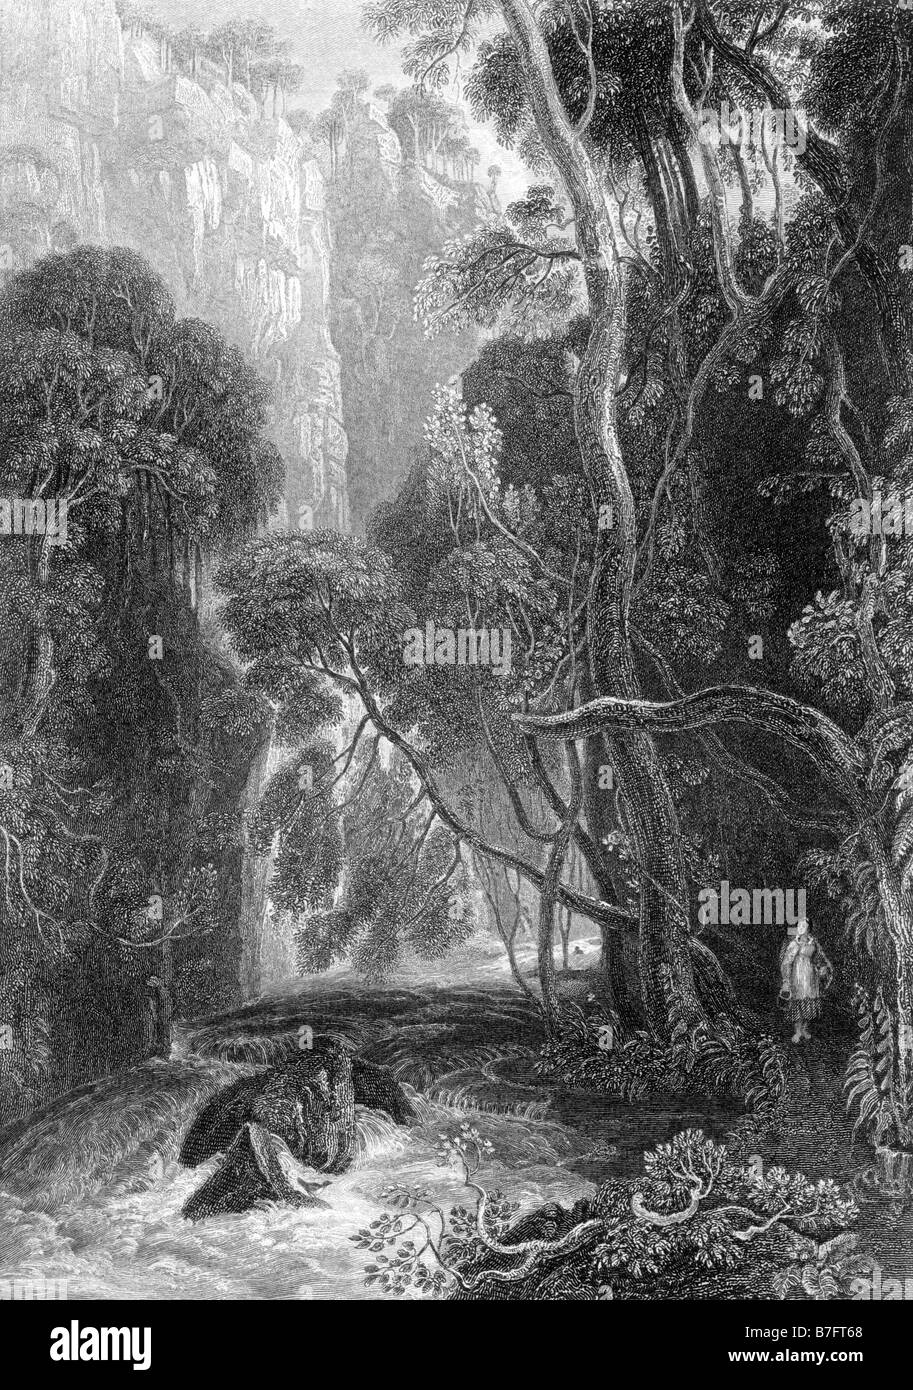 Escena en el río Doon grabado por David Octavius Hill 1802 a 1870 Ilustración del siglo XIX. Foto de stock